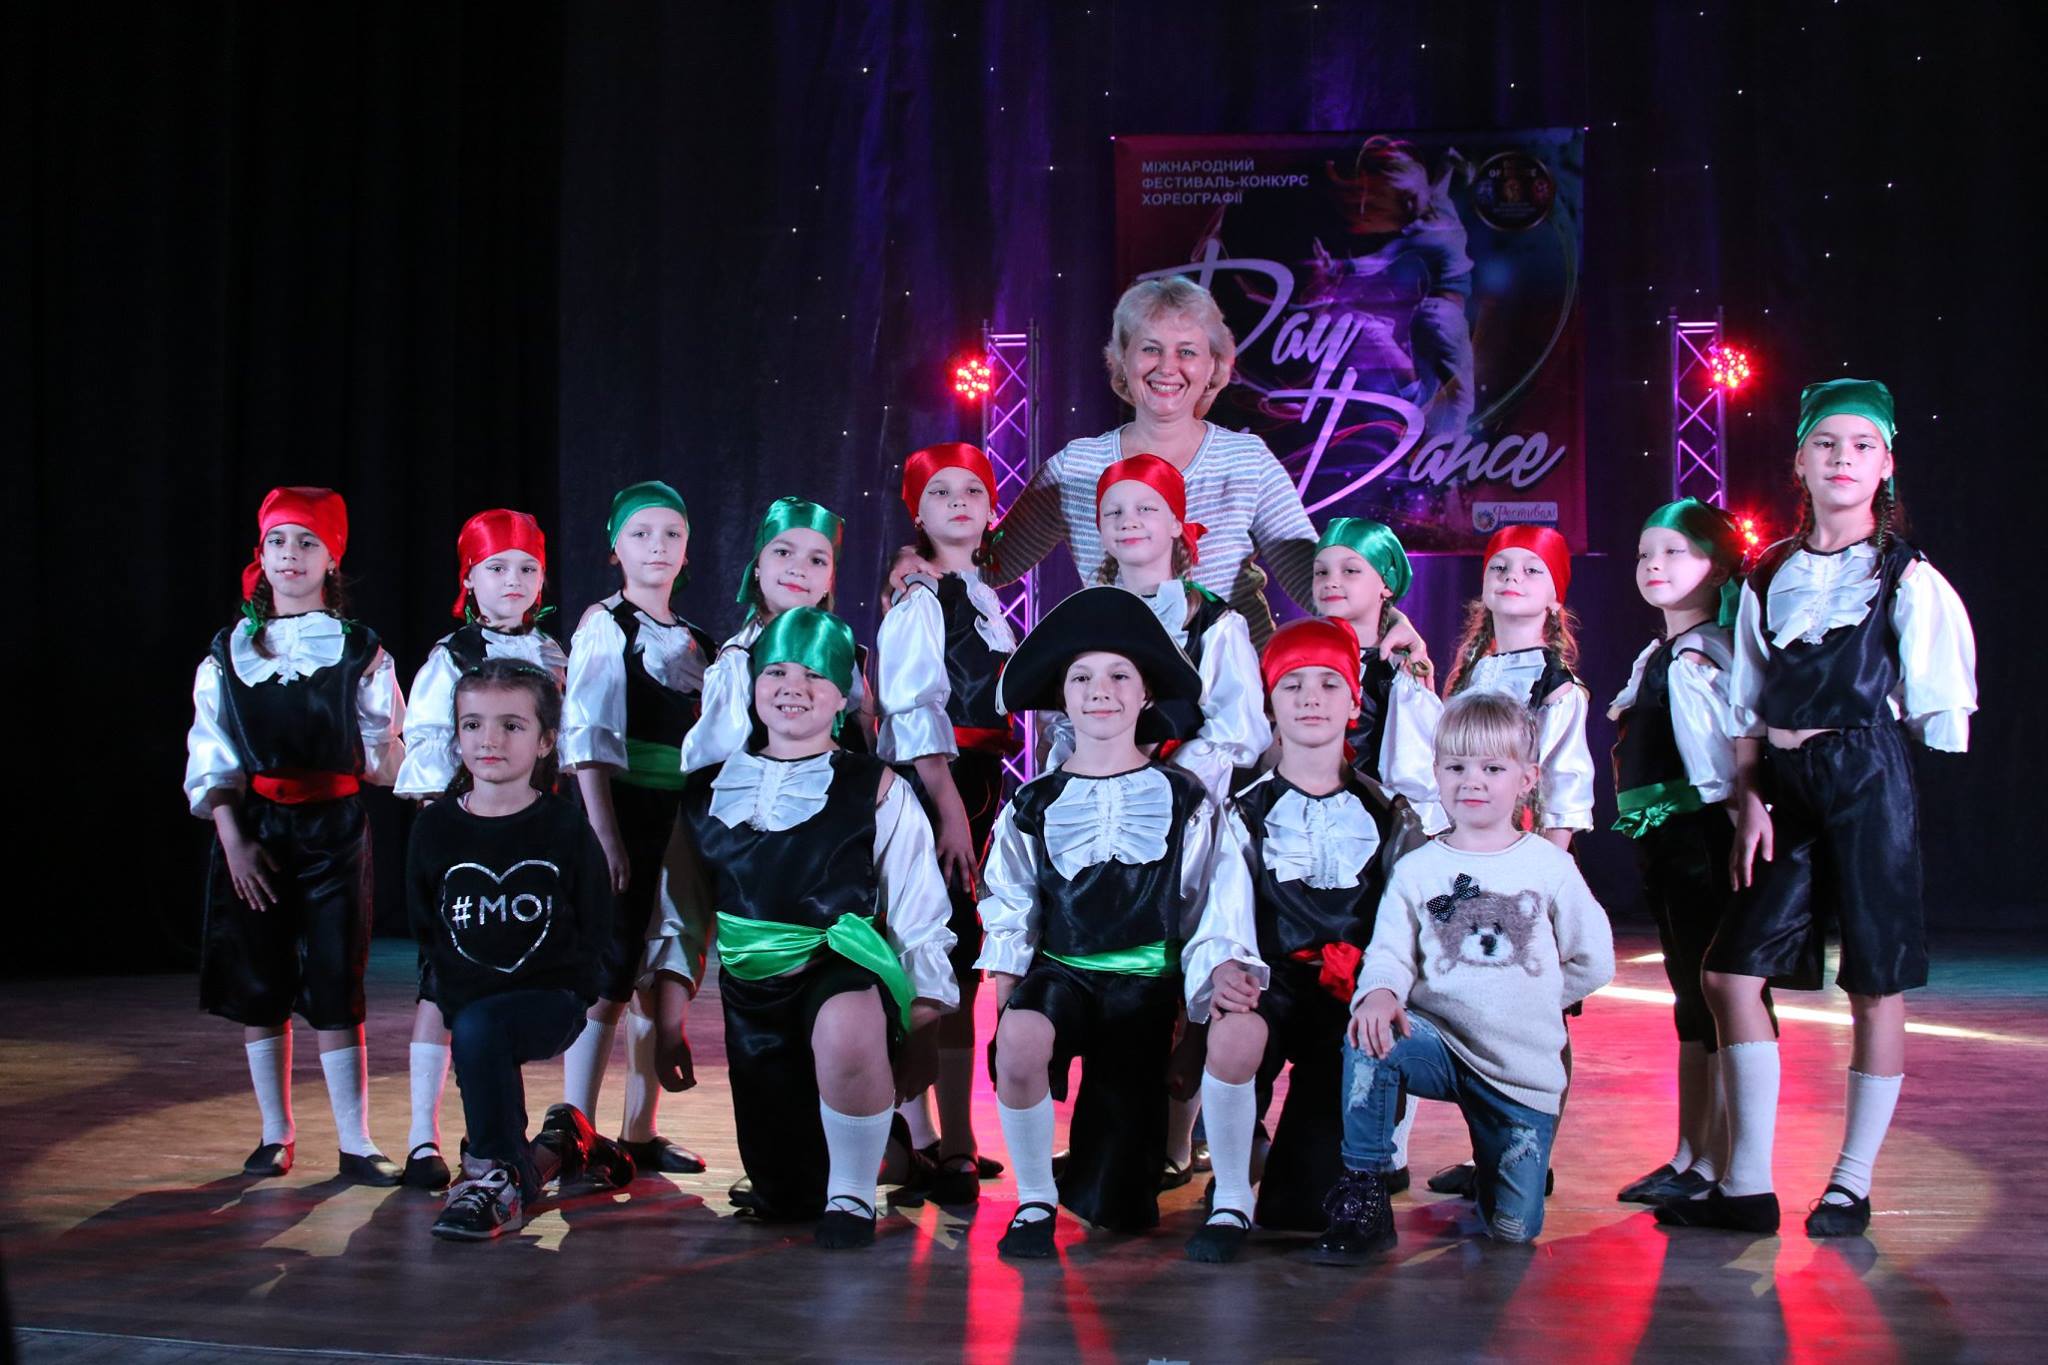 Талантливые дети областного центра Закарпатья сумели достойно представить свой край на всеукраинском международном танцевальном фестивале-конкурсе «Day Of Dance 2016», который проходил 20-22 октября во Львове.